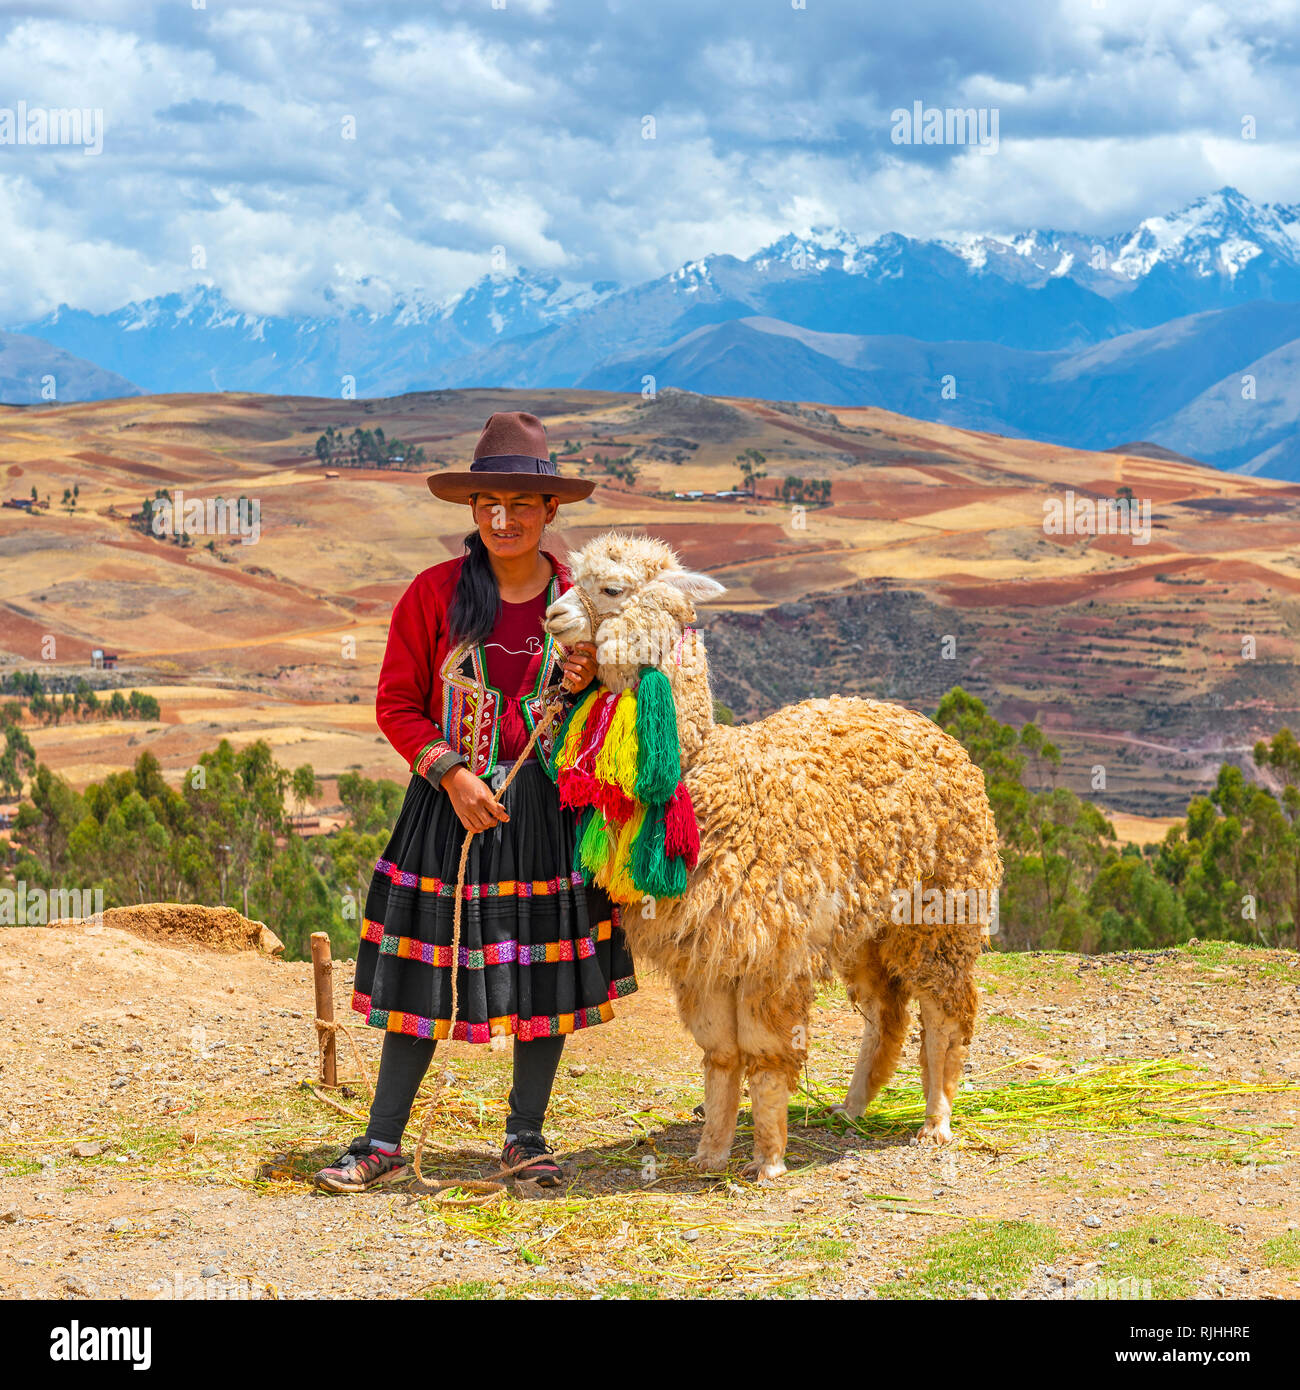 Square fotografia di un indigeno Quechua donna con cappello tradizionale e gonna insieme con gli alpaca e la Valle Sacra paesaggio vicino a Cusco, Perù. Foto Stock